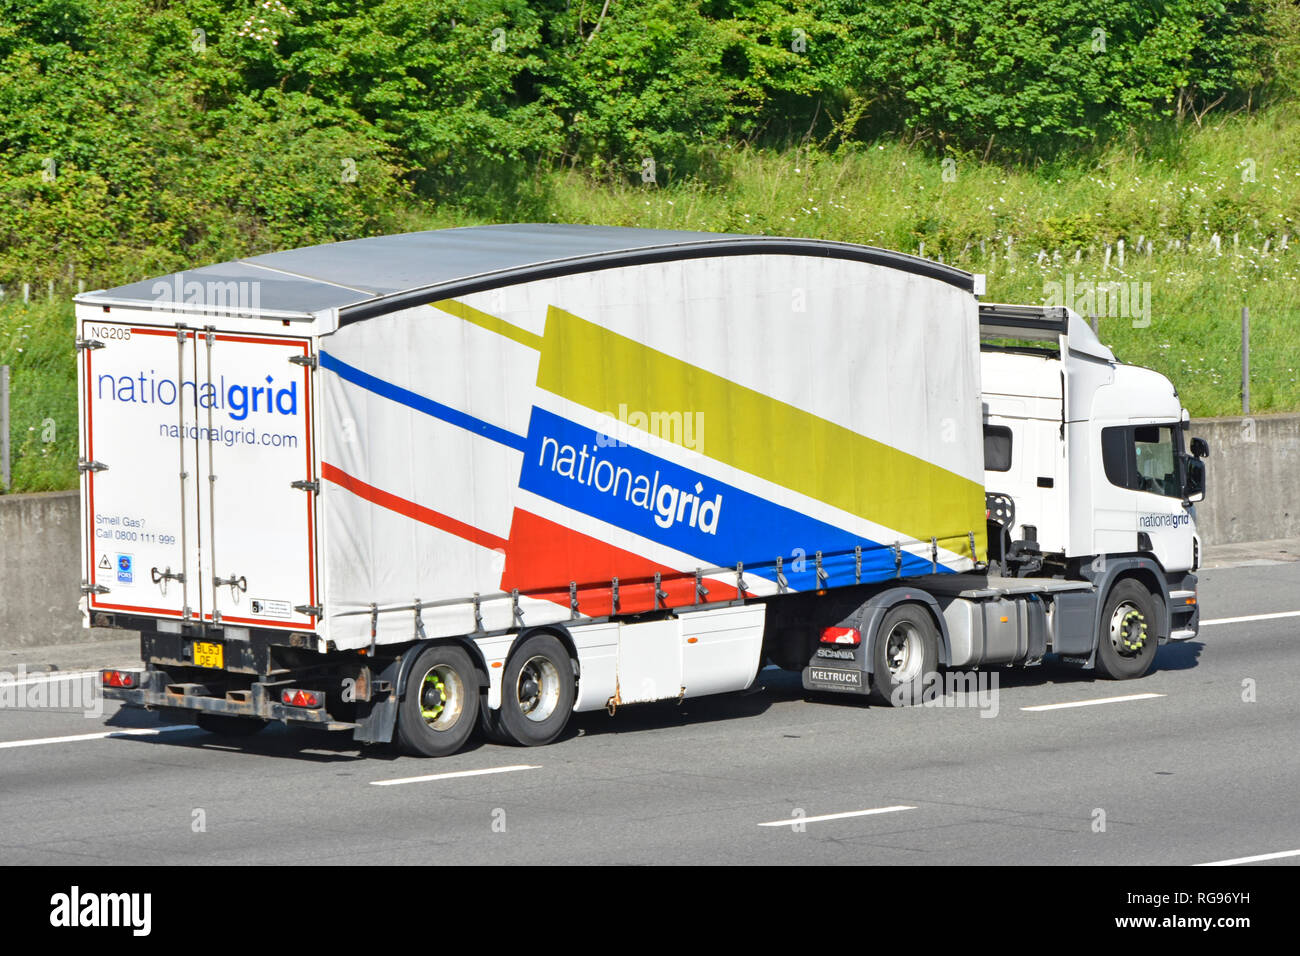 Lato & vista posteriore del National Grid hgv camion Truck & grafica colorata sul lato della forma aerodinamica rimorchio articolato su autostrada Essex England Regno Unito Foto Stock